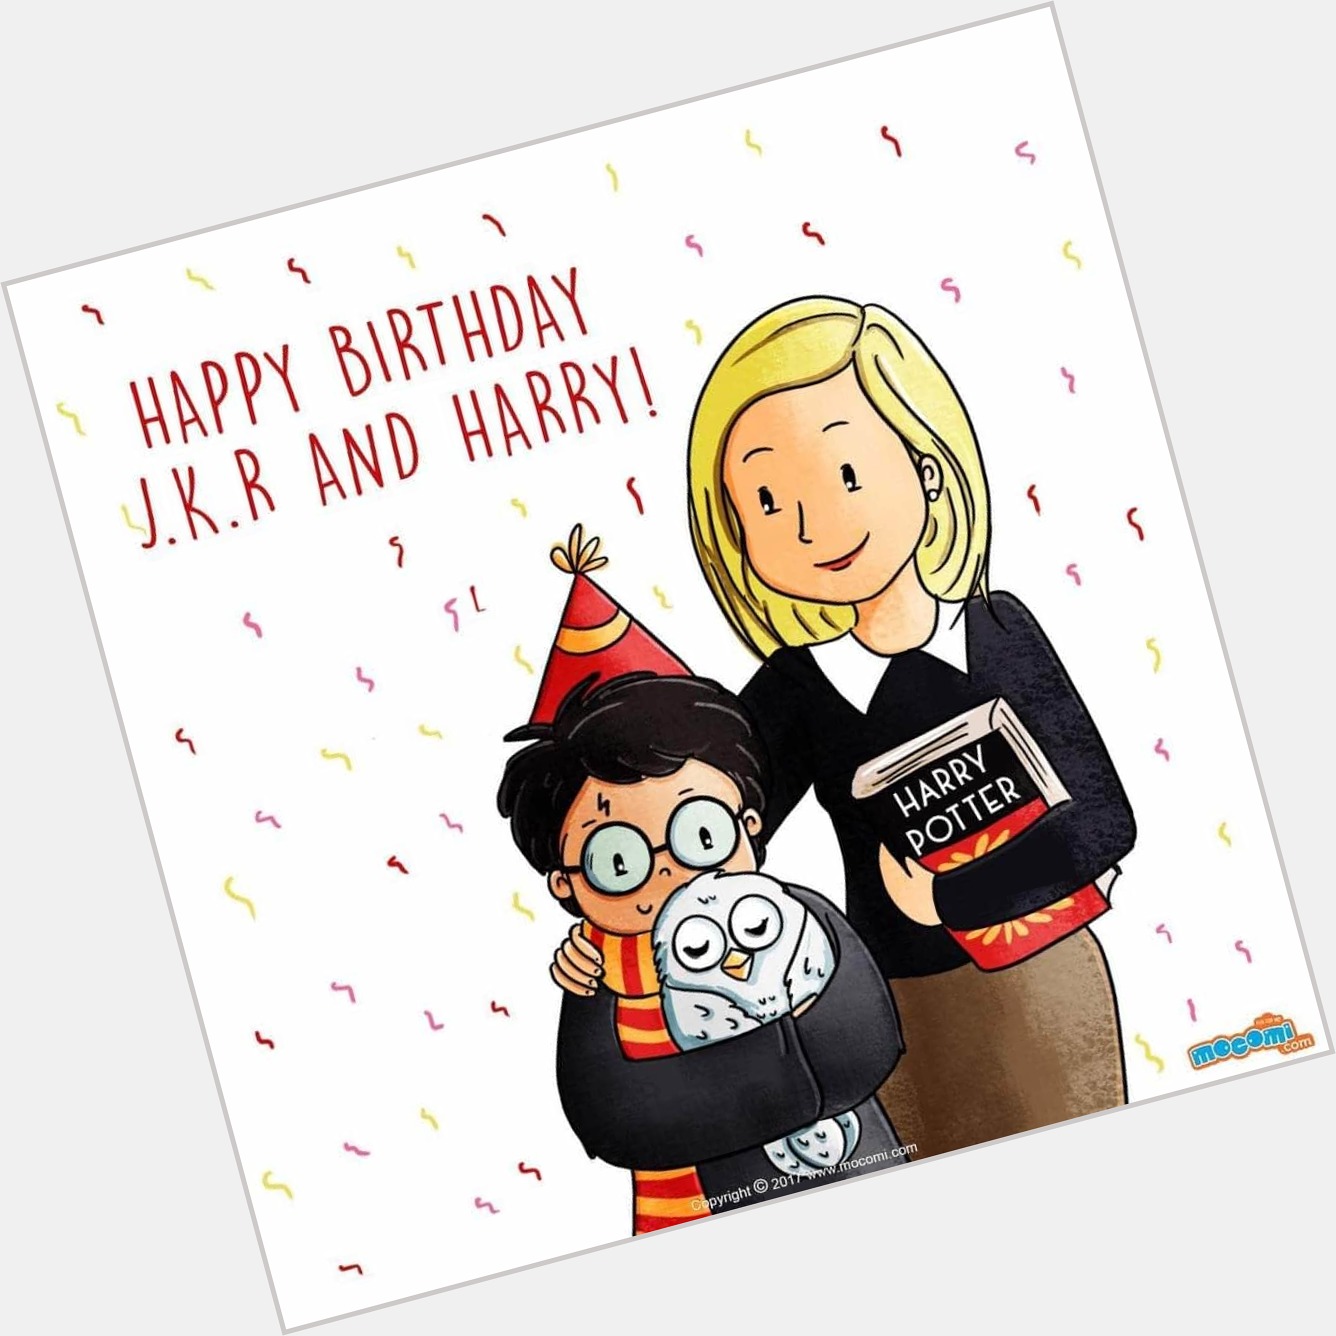 Happy Birthday Harry Potter

J.K. Rowling hizo que Harry y ella cumplieran años el mismo día... 